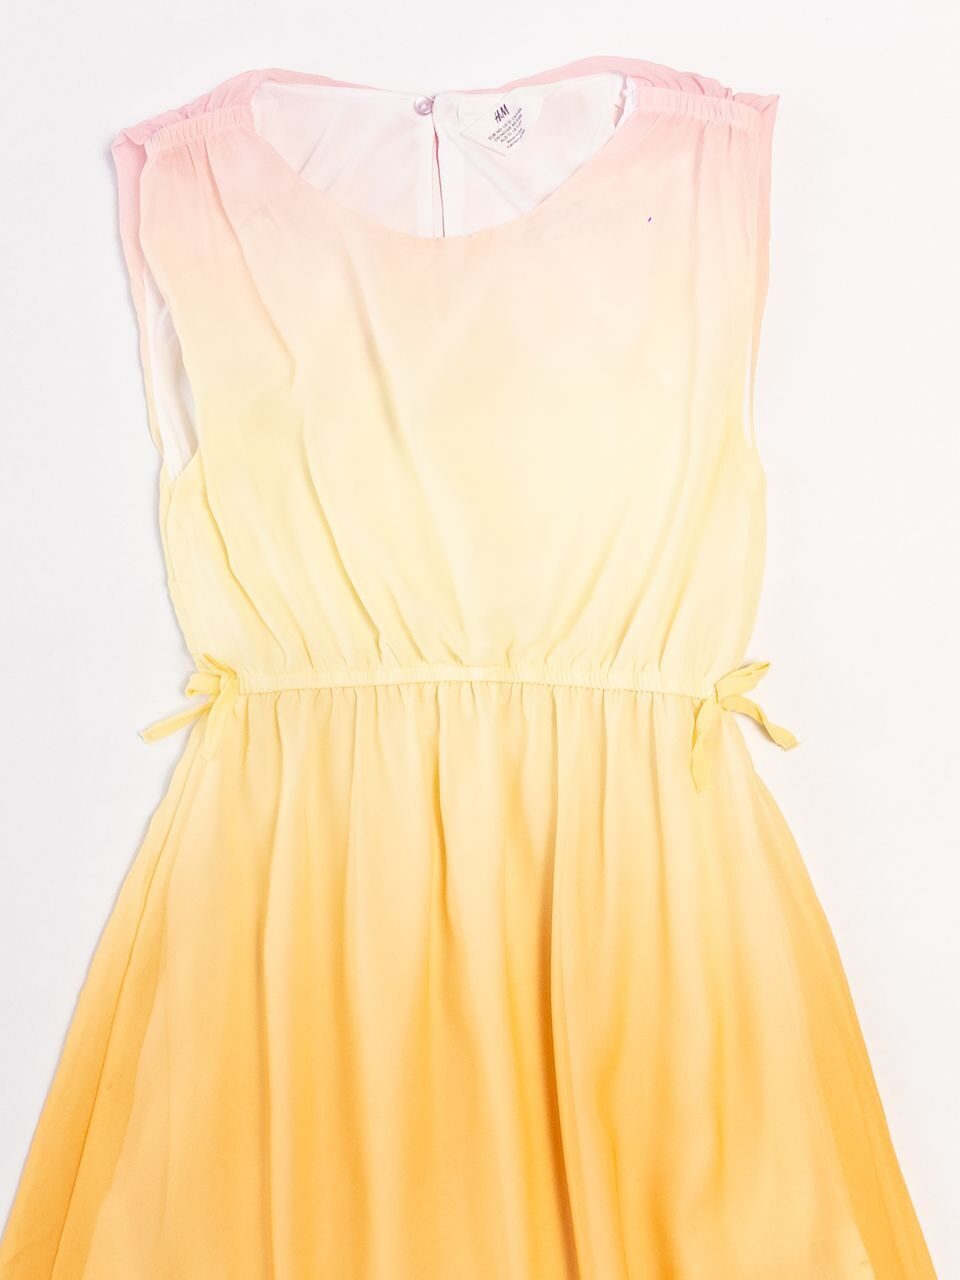 Платье шифоновое для девочки на подкладе застежка на пуговице сзади разноцветное рост 140 см H&M *дефект дырка спереди